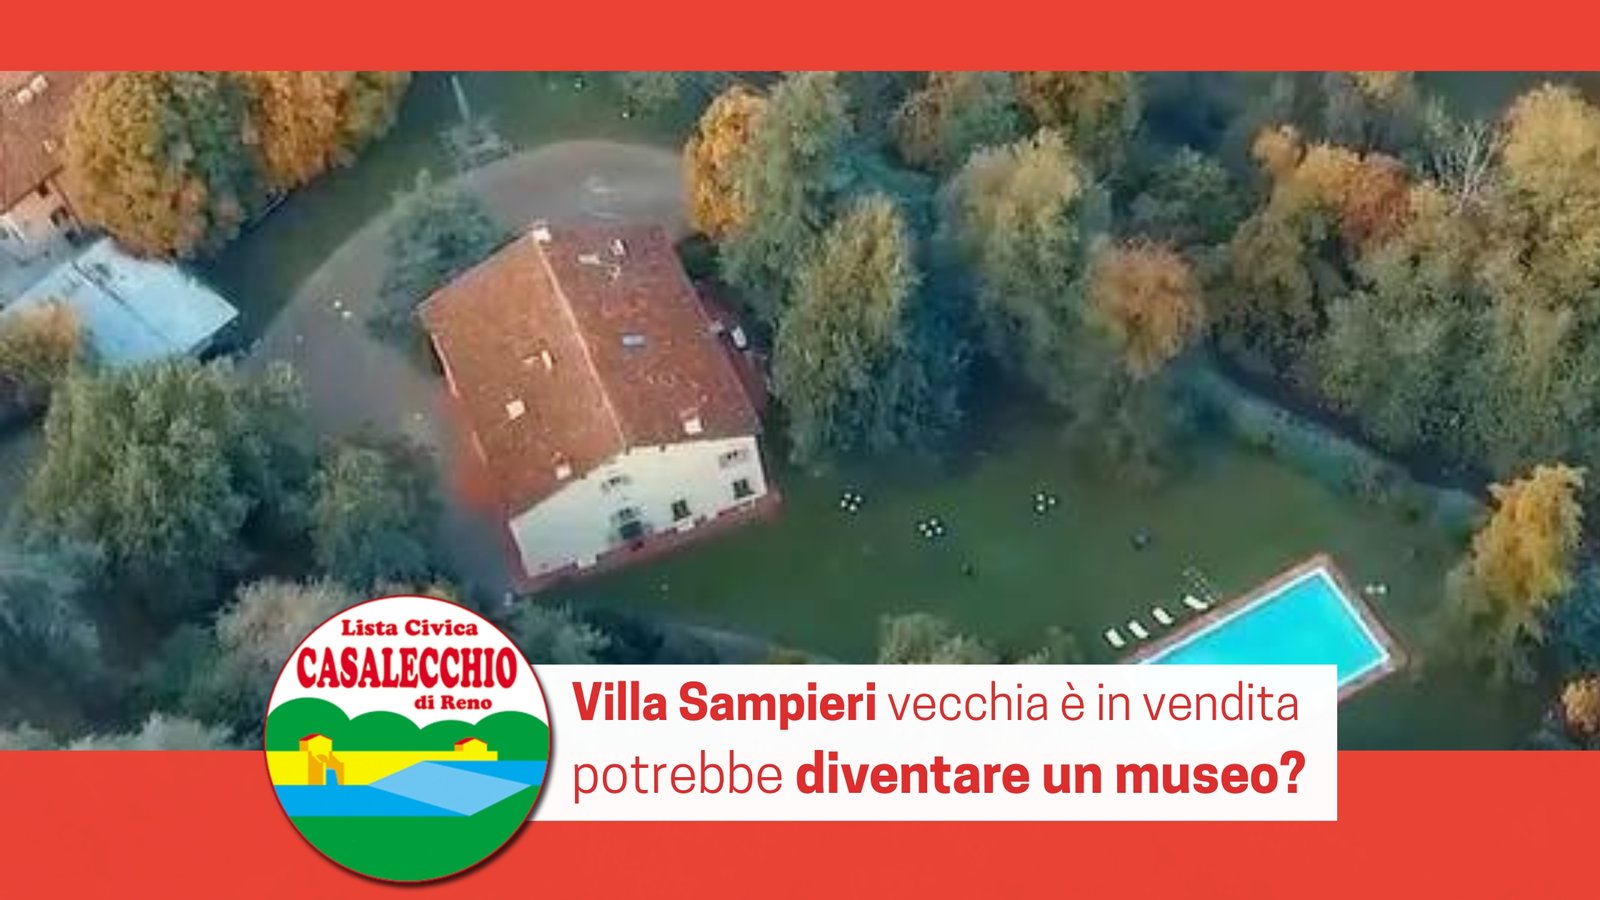 Al momento stai visualizzando Villa Sampieri vecchia potrebbe diventare un museo?